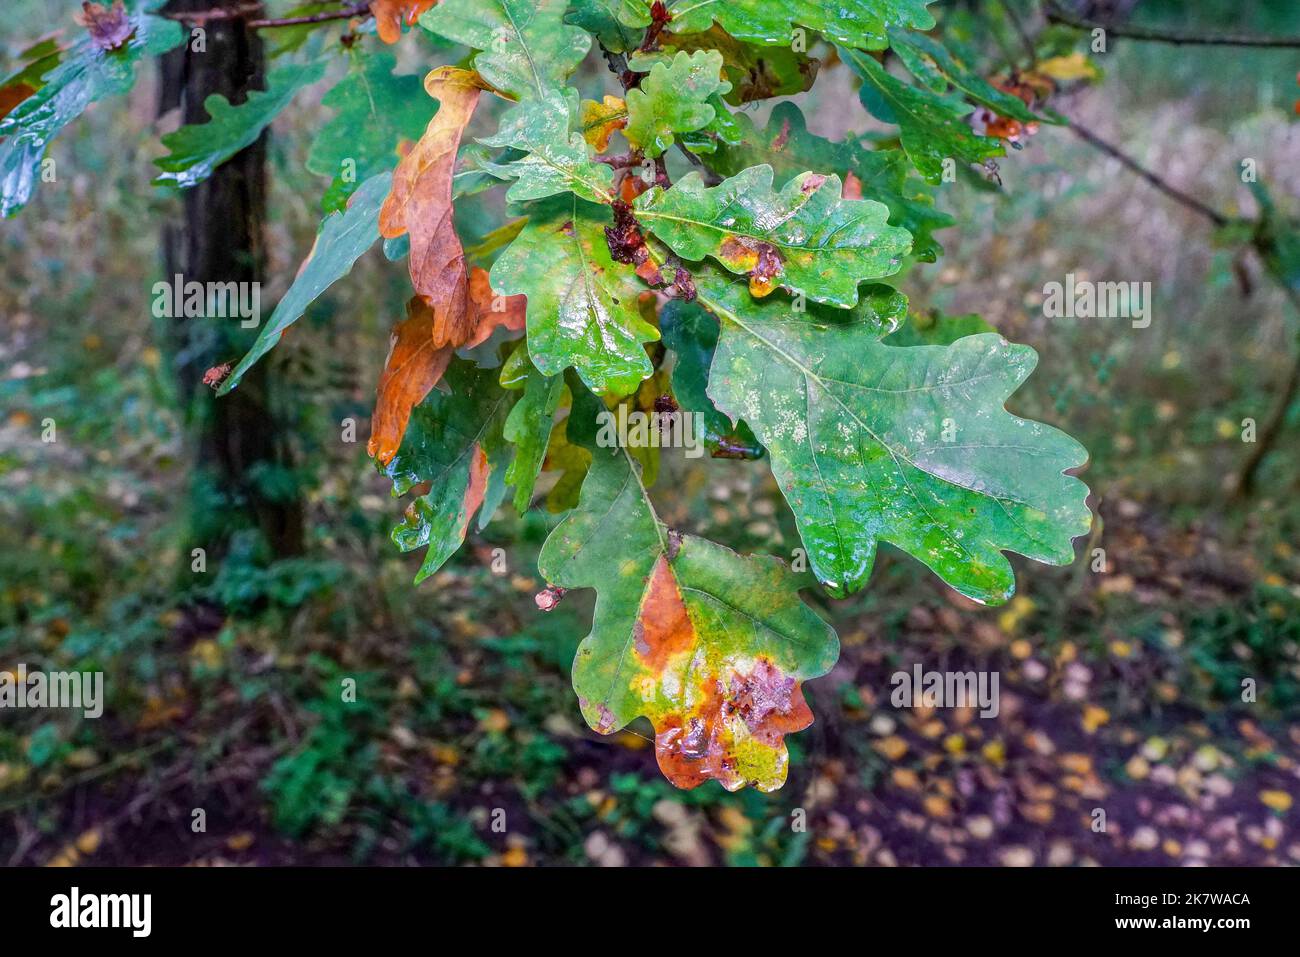 Herbstlich verfärbtes Eichenlaub am Zweig Stock Photo